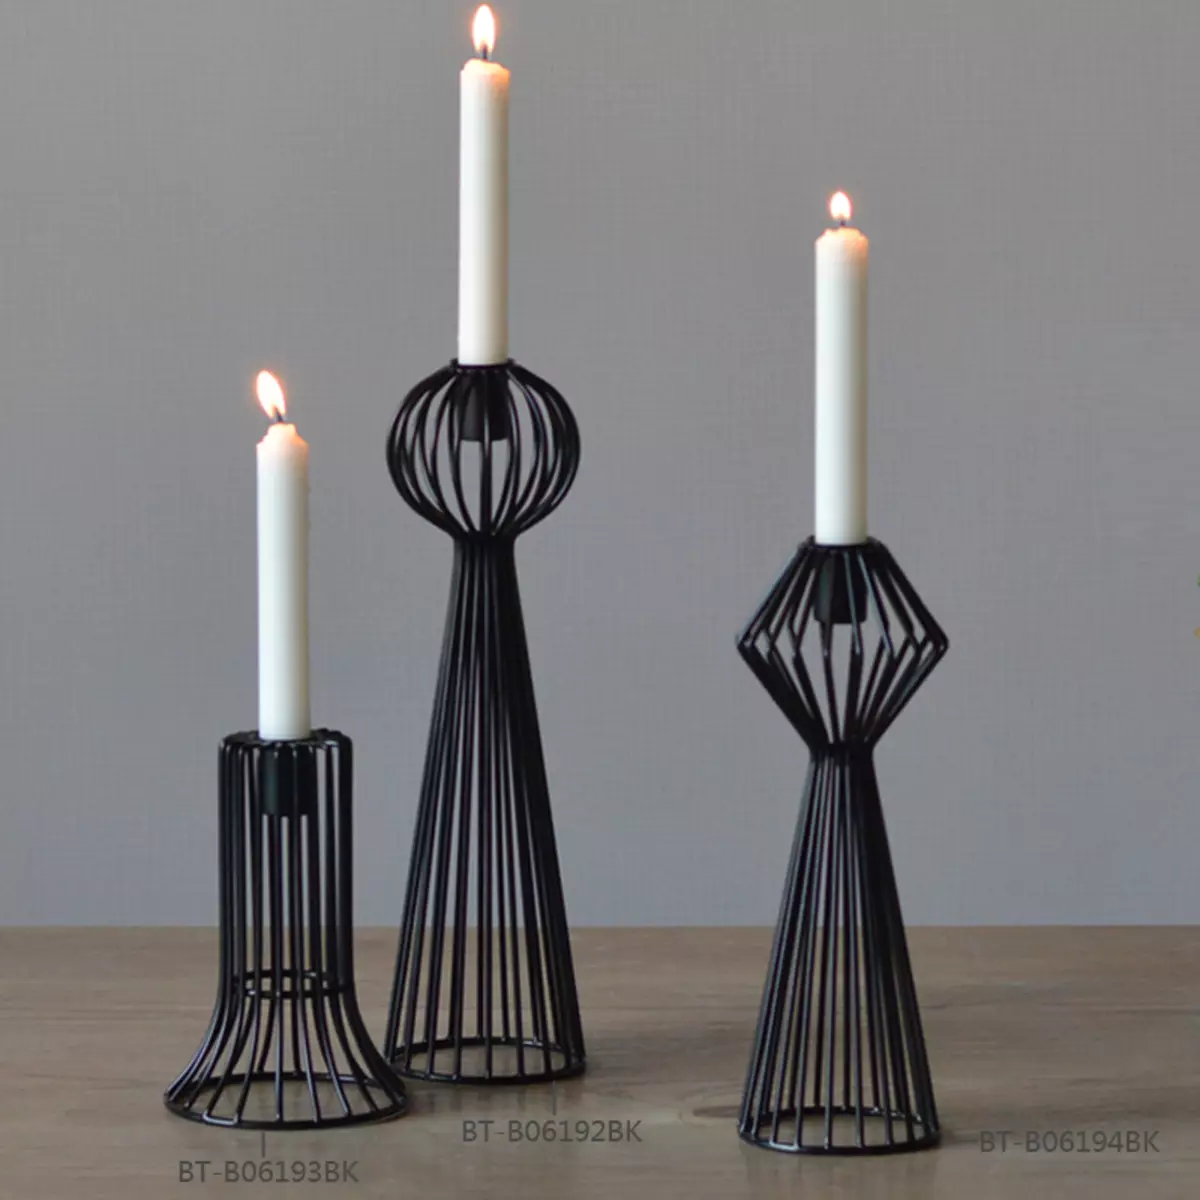 شمعدان فلزی: شمعدان سیاه و سفید فلزی و طلا، یک شمع و 5 شمع، به شکل گوزن و دیگر شمعدان های تزئینی آهن 13157_10